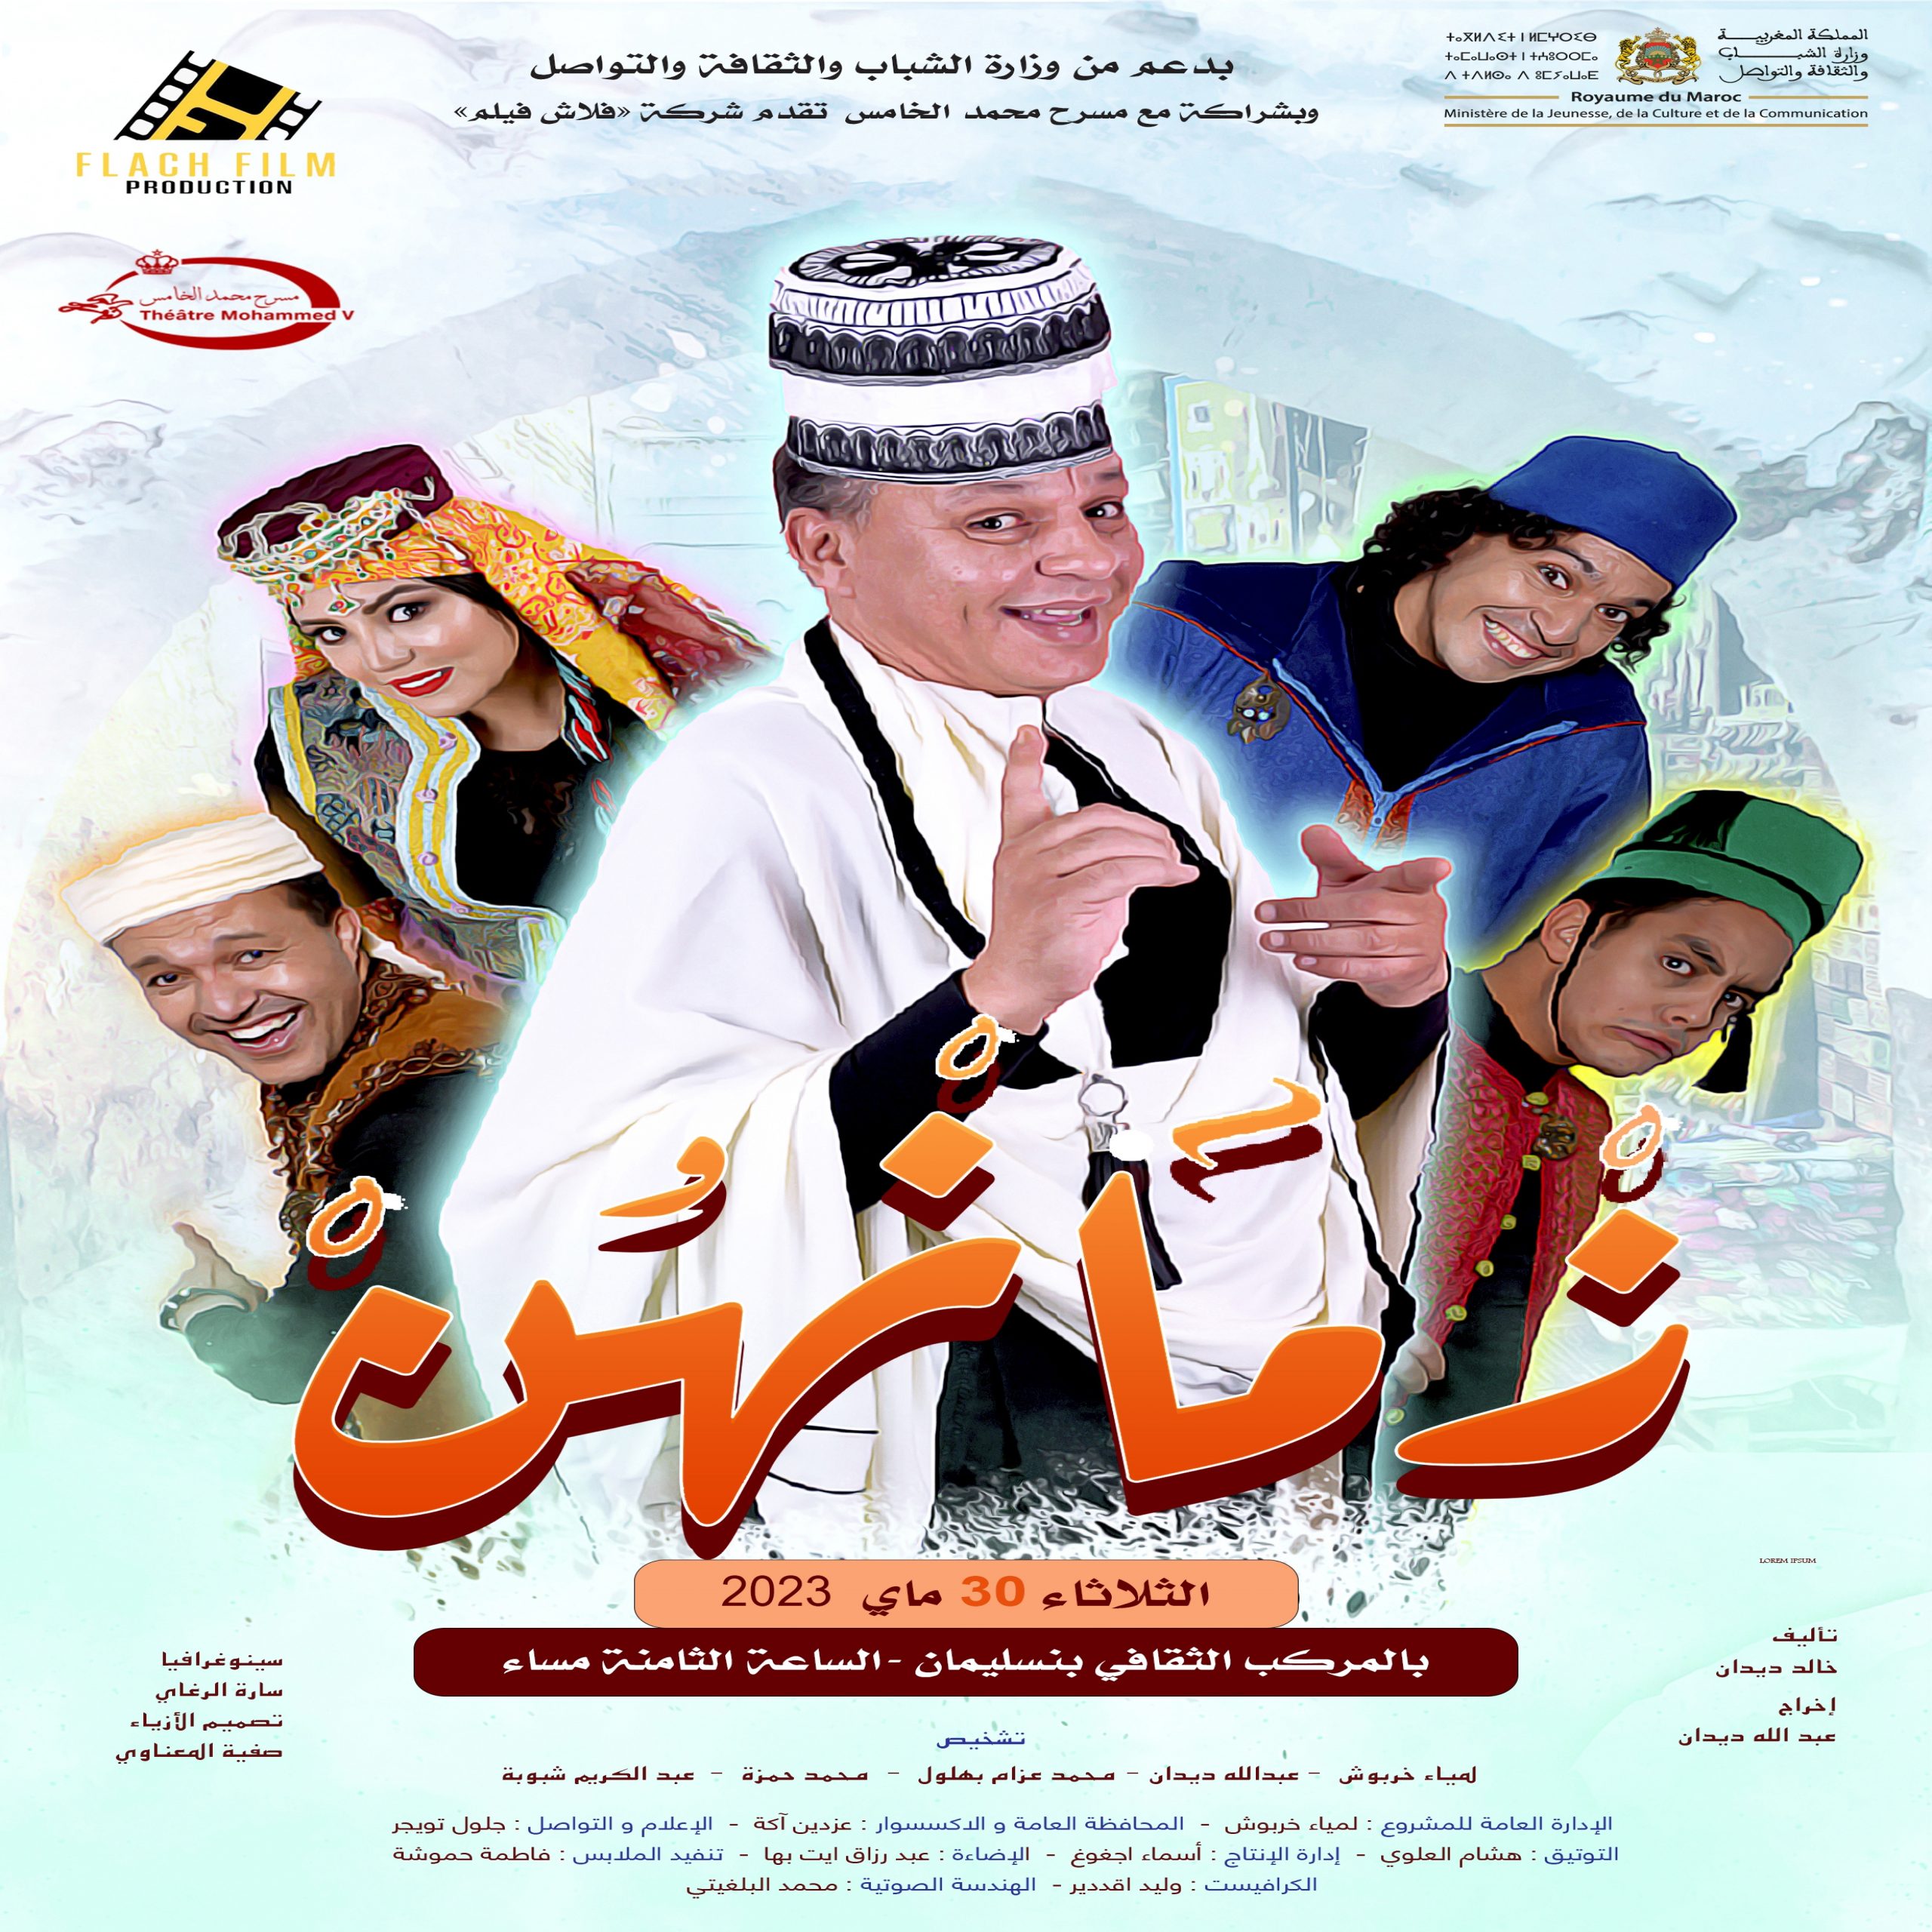 ” فلاش فيلم” تعرض مسرحيتها الناجحة ” زمانهن” في عدد من مدن المملكة